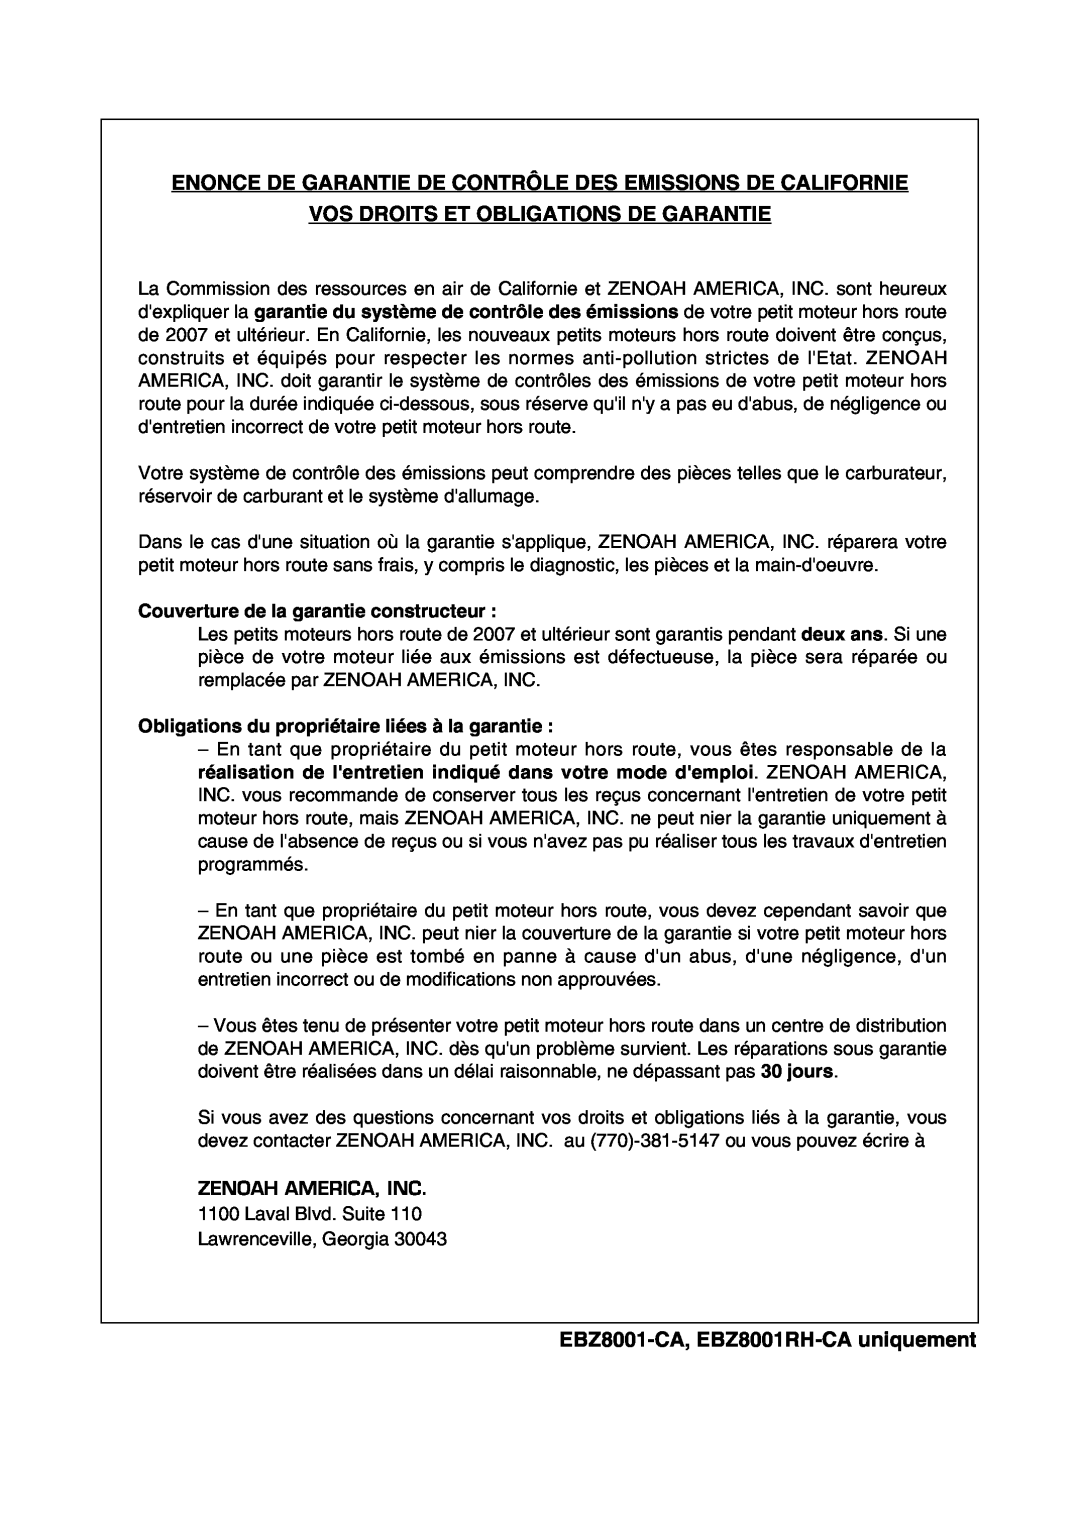 Zenoah manual Vos Droits Et Obligations De Garantie, EBZ8001-CA, EBZ8001RH-CAuniquement 